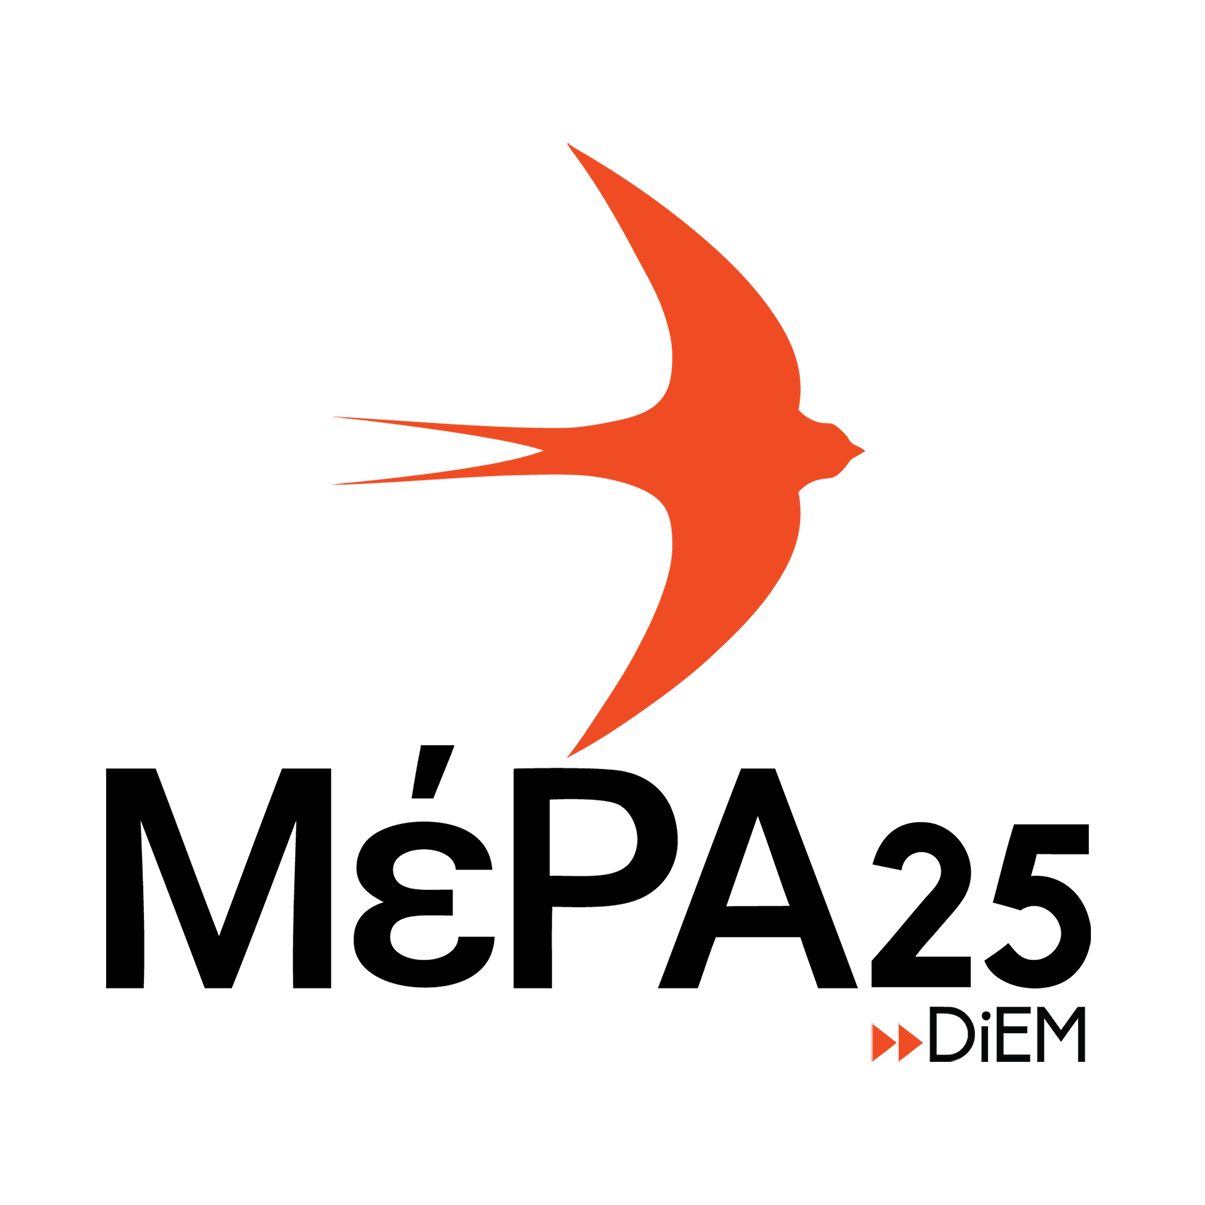 ΜέΡΑ25 : Παλλαϊκή συστράτευση στη βάση επτά πολιτικών